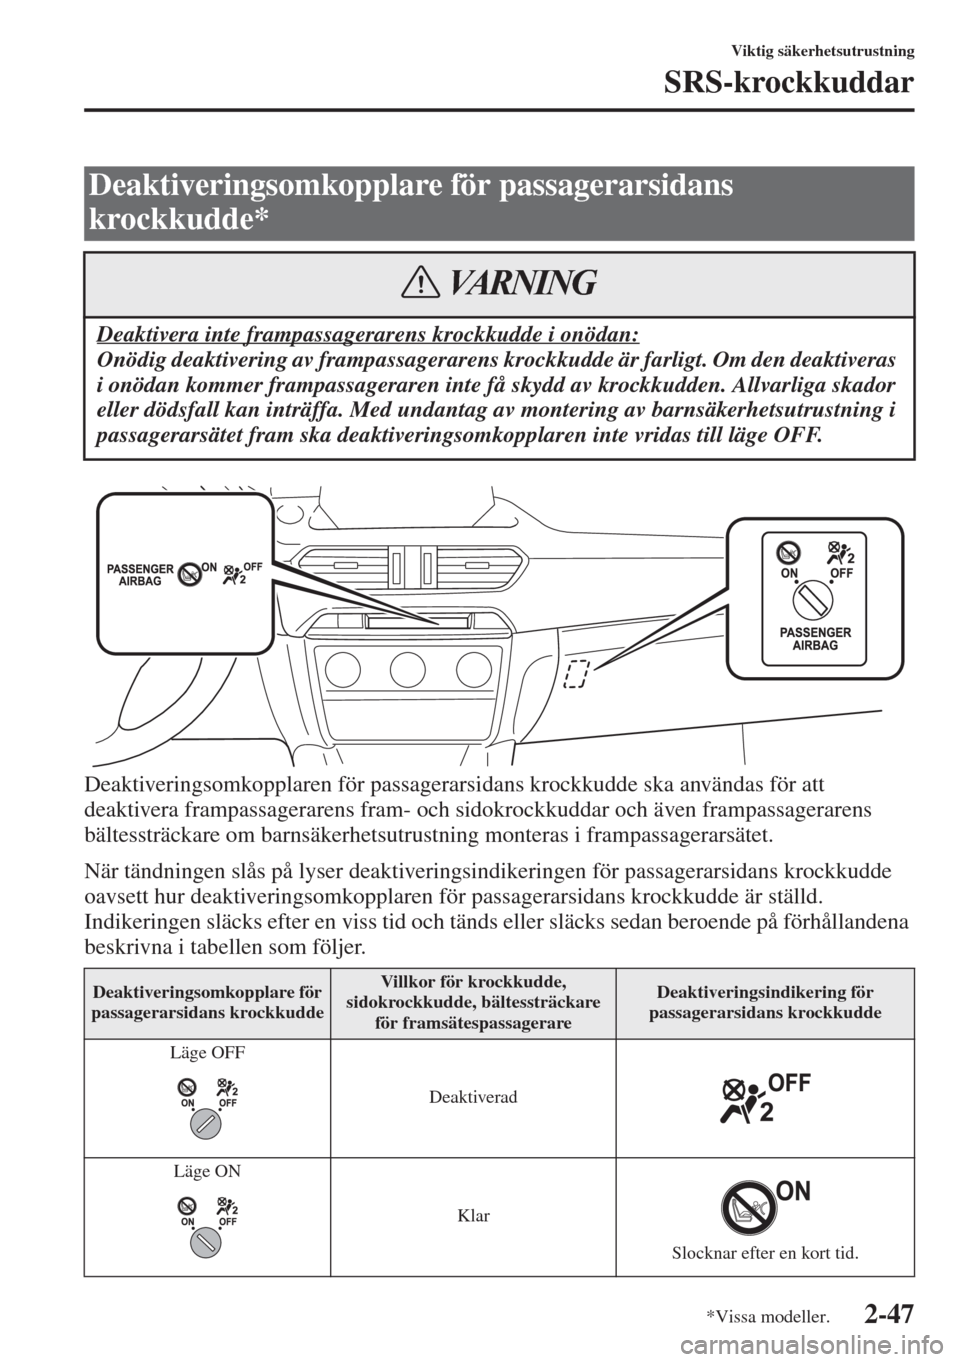 MAZDA MODEL 6 2015  Ägarmanual (in Swedish) 2-47
Viktig säkerhetsutrustning
SRS-krockkuddar
Deaktiveringsomkopplaren för passagerarsidans krockkudde ska användas för att 
deaktivera frampassagerarens fram- och sidokrockkuddar och även fram